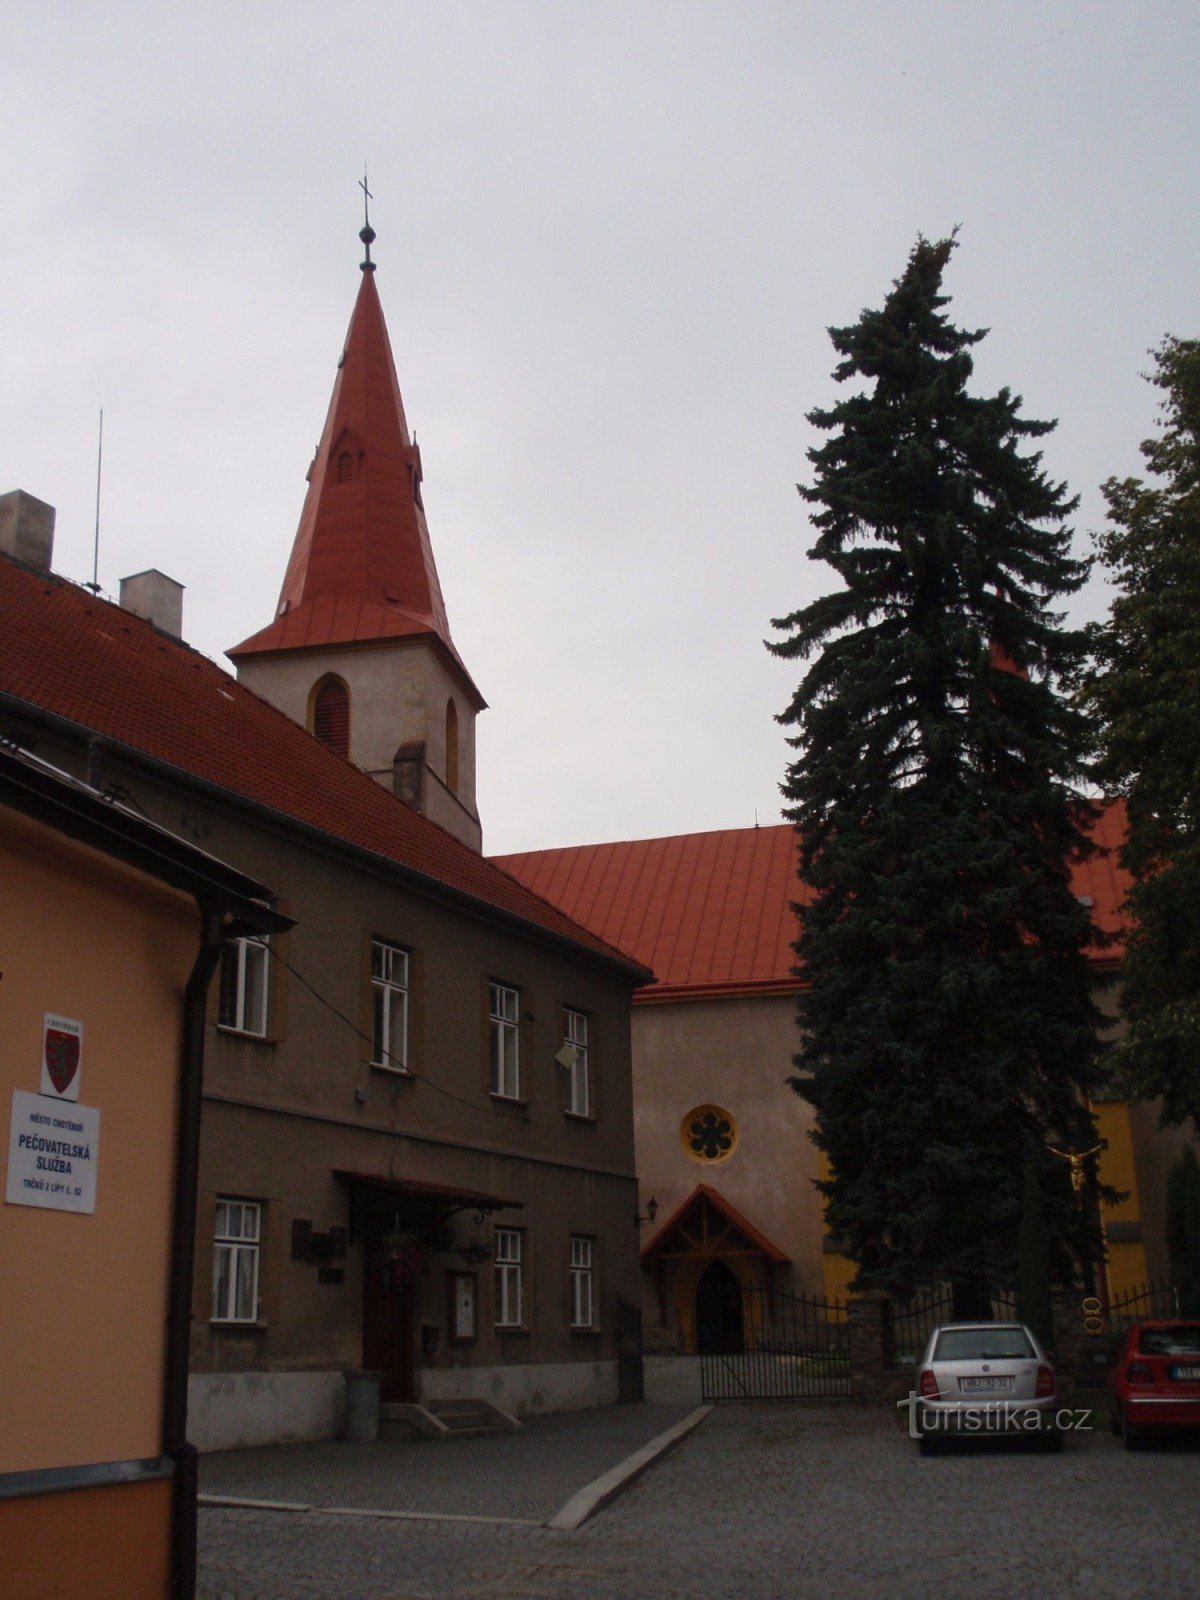 Εκκλησιαστικά μνημεία της πόλης Chotěboře